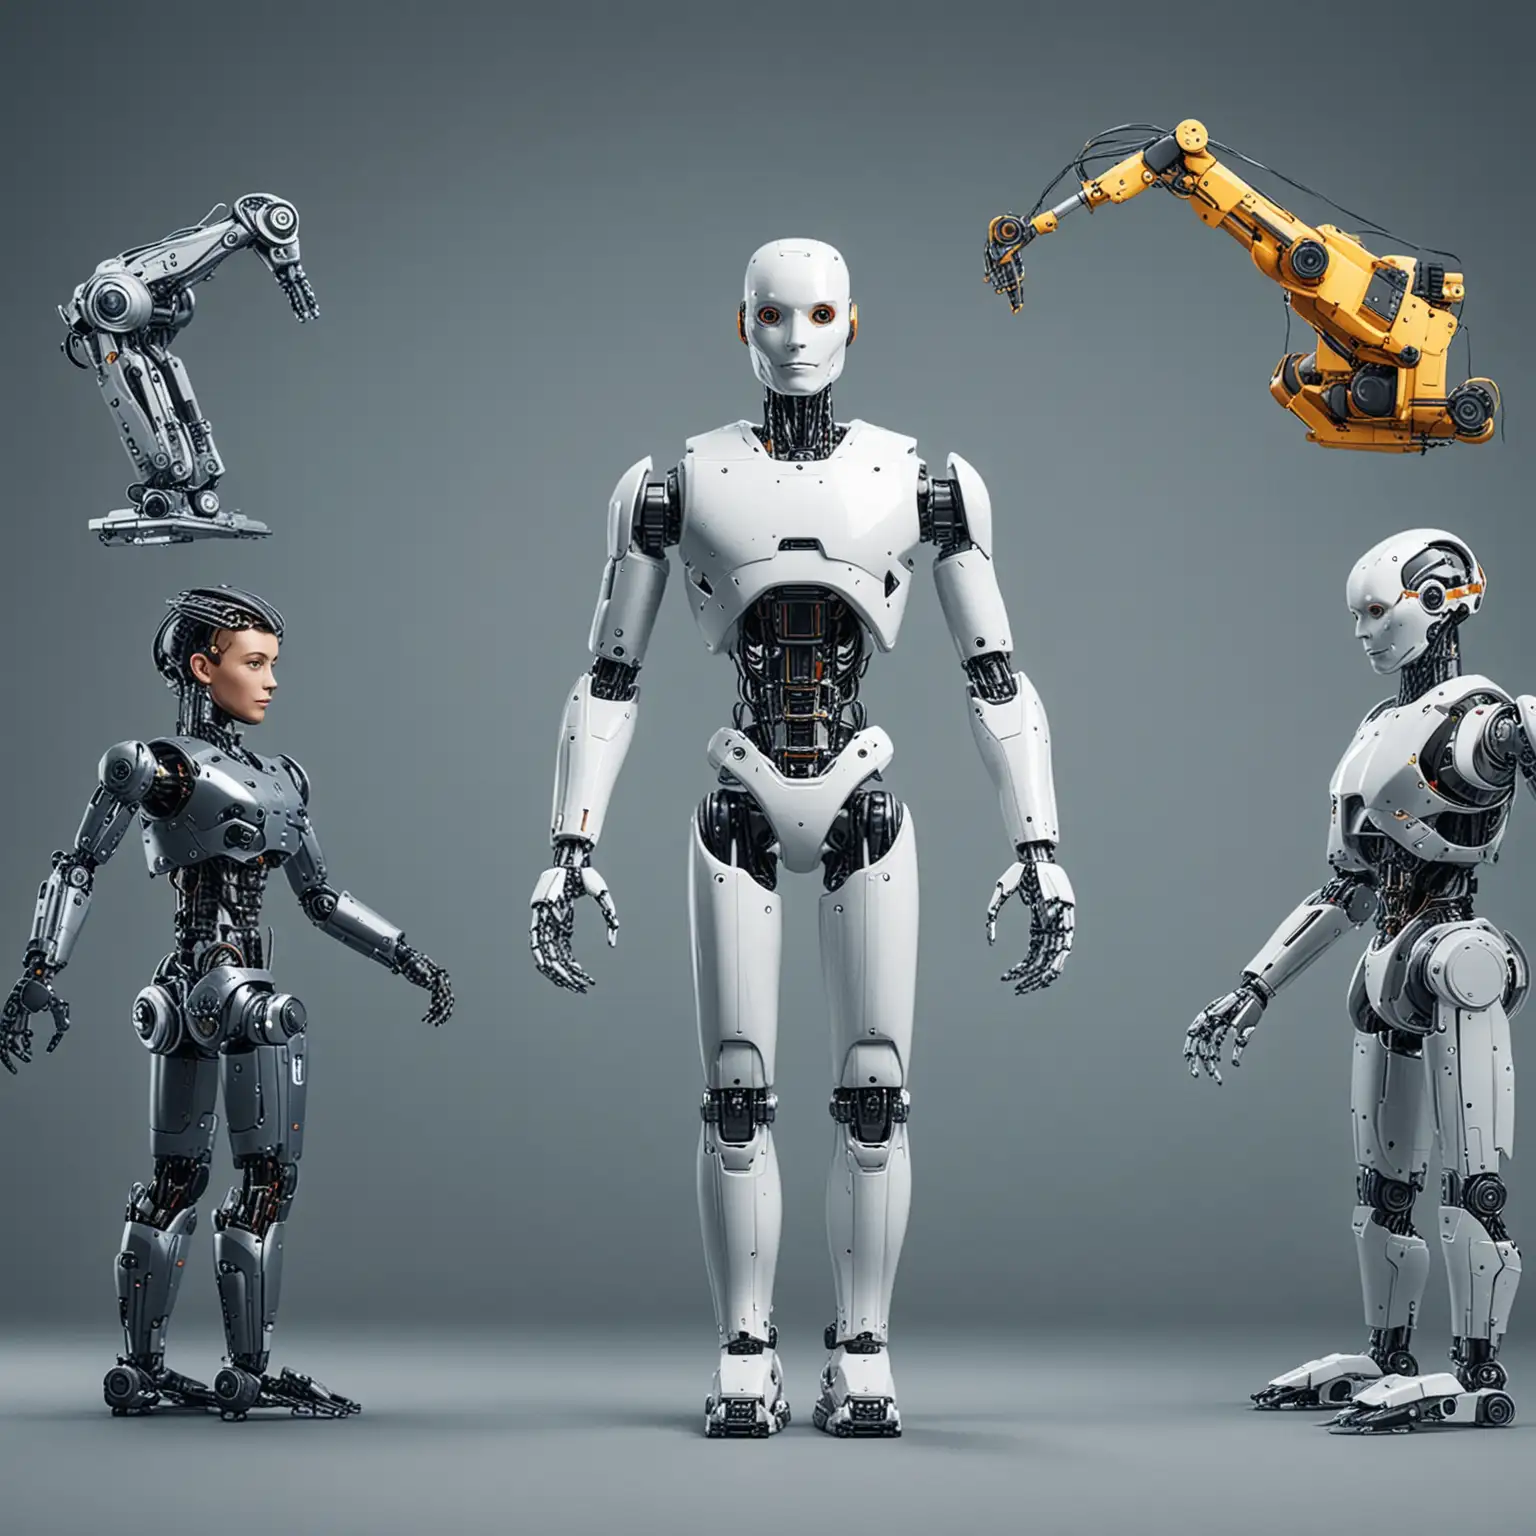 Diverse AI Robots Across Various Industries